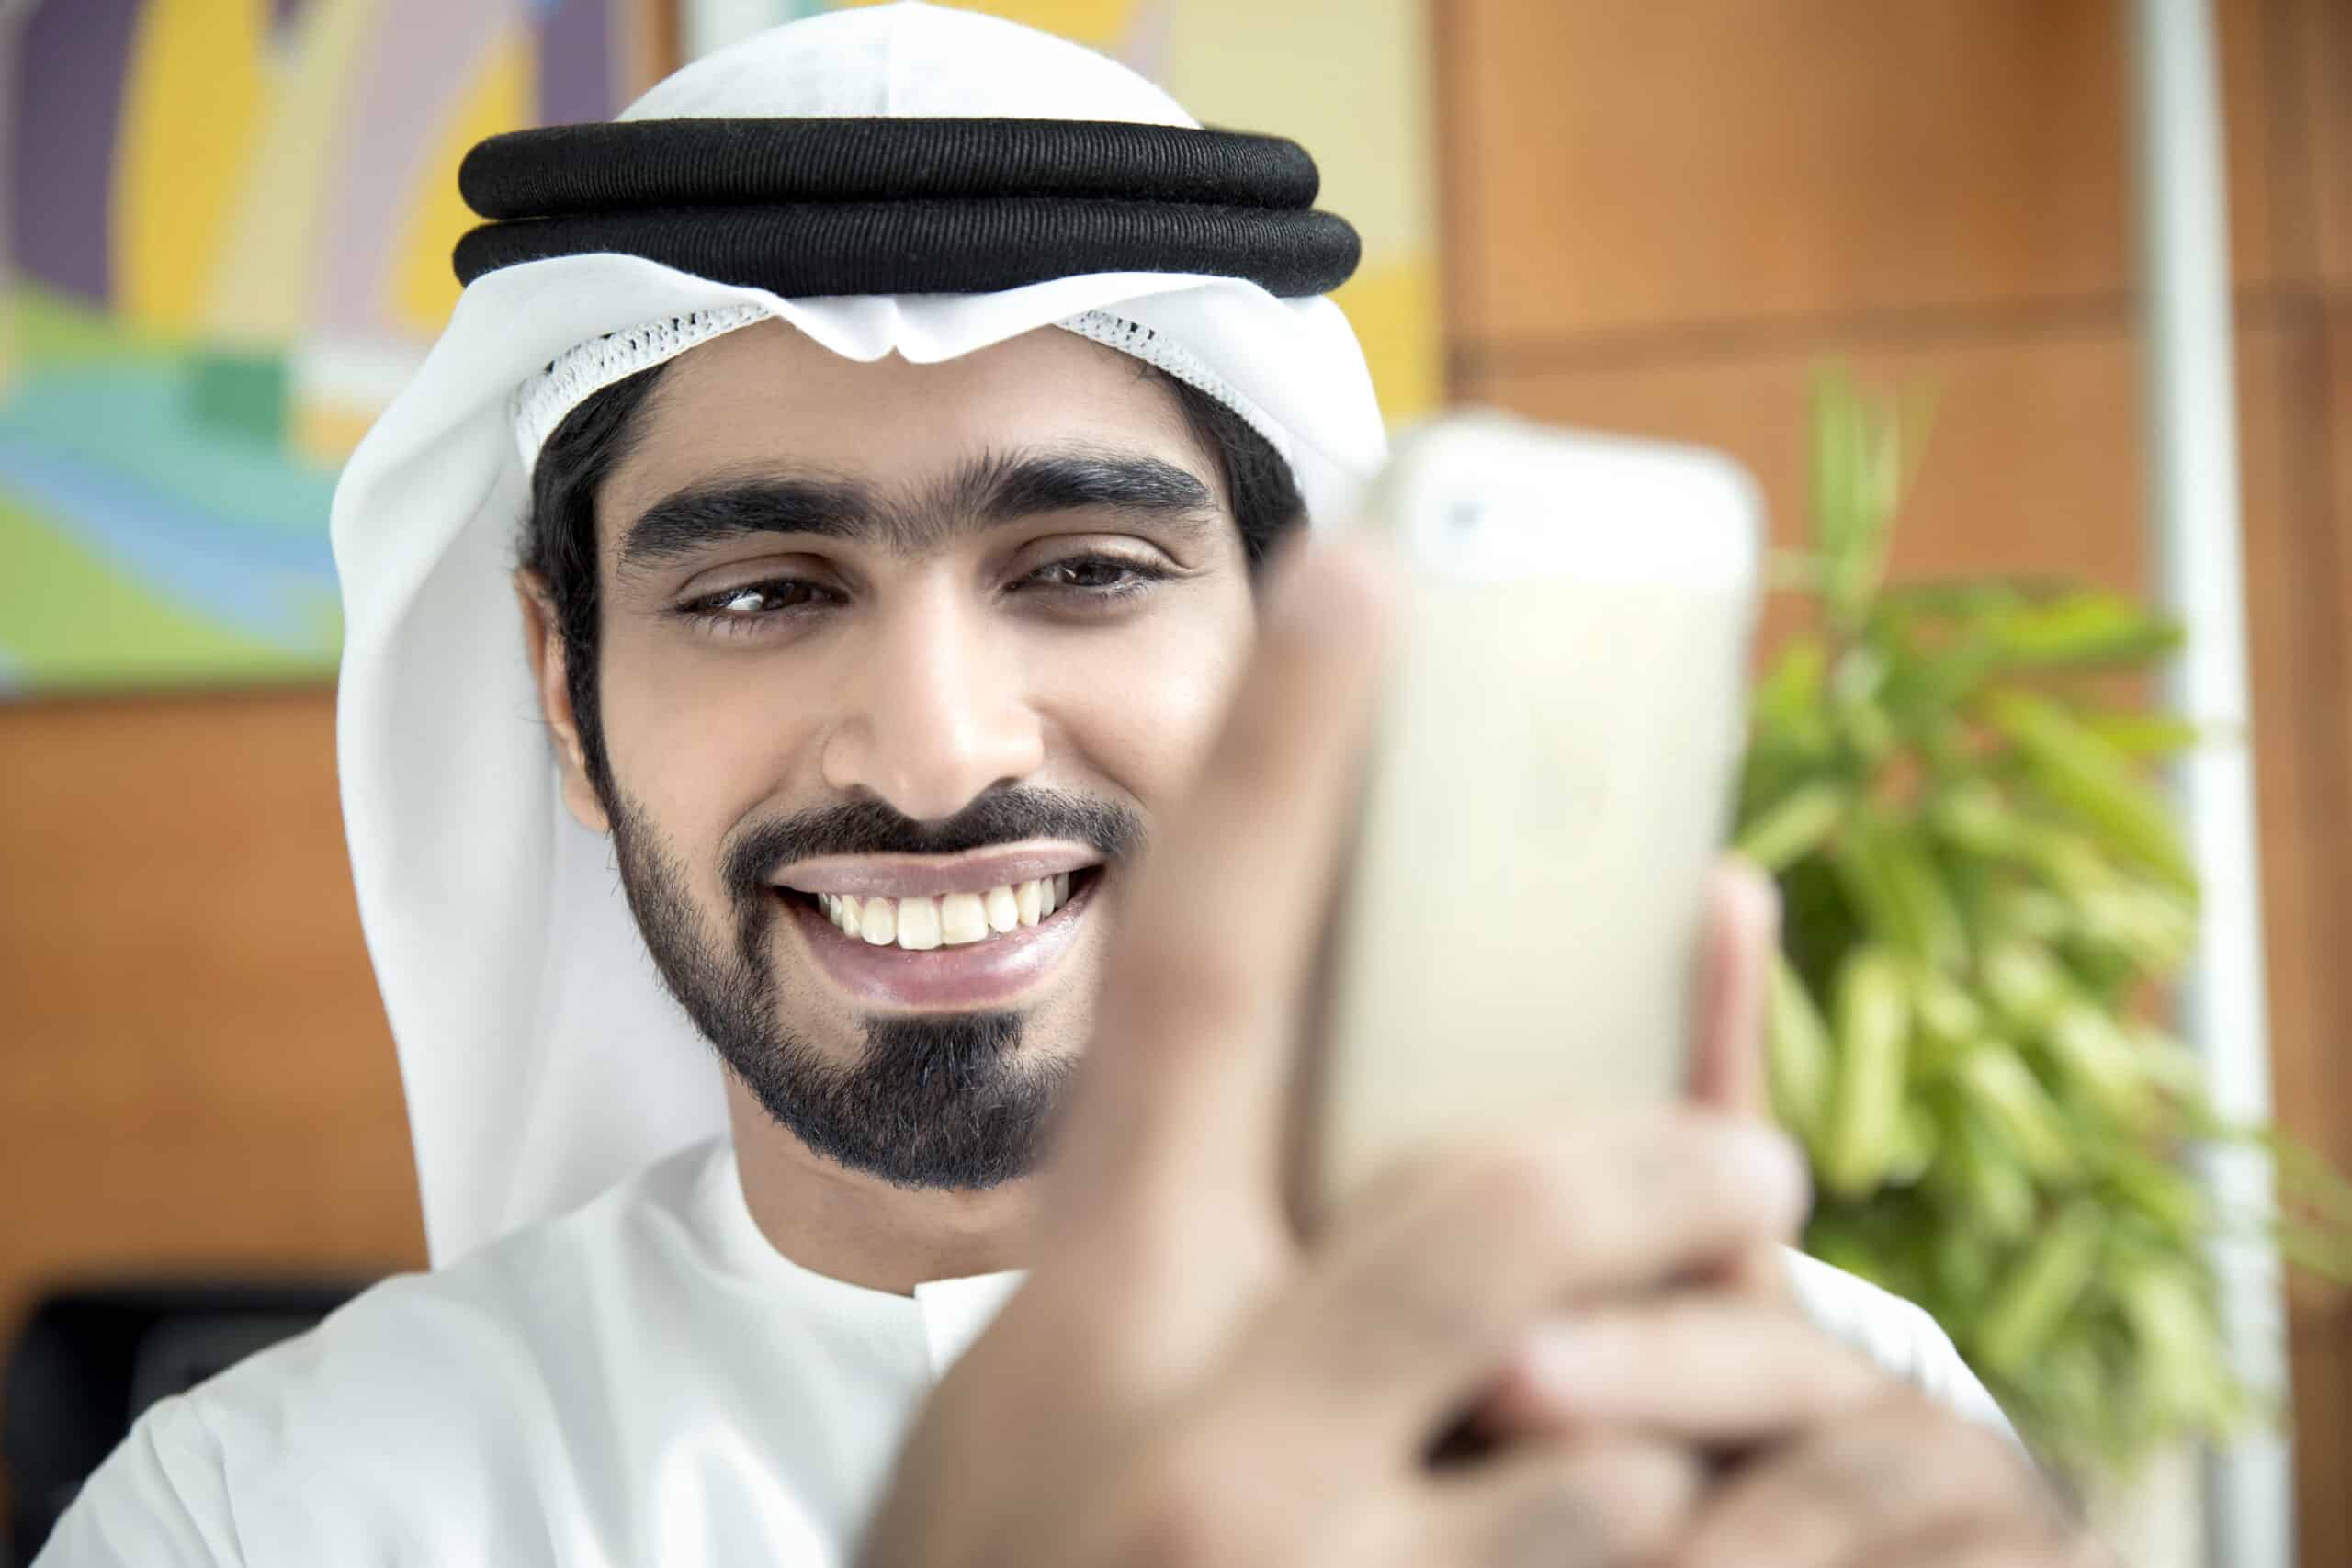 Ein lächelnder Mann in traditioneller emiratischer Kleidung hält ein Smartphone, scheint ein Selfie zu machen oder mit dem Telefon zu interagieren. Er ist in einem Gebäude mit farbenfrohen Kunstwerken im Hintergrund. © Fotografie Tomas Rodriguez